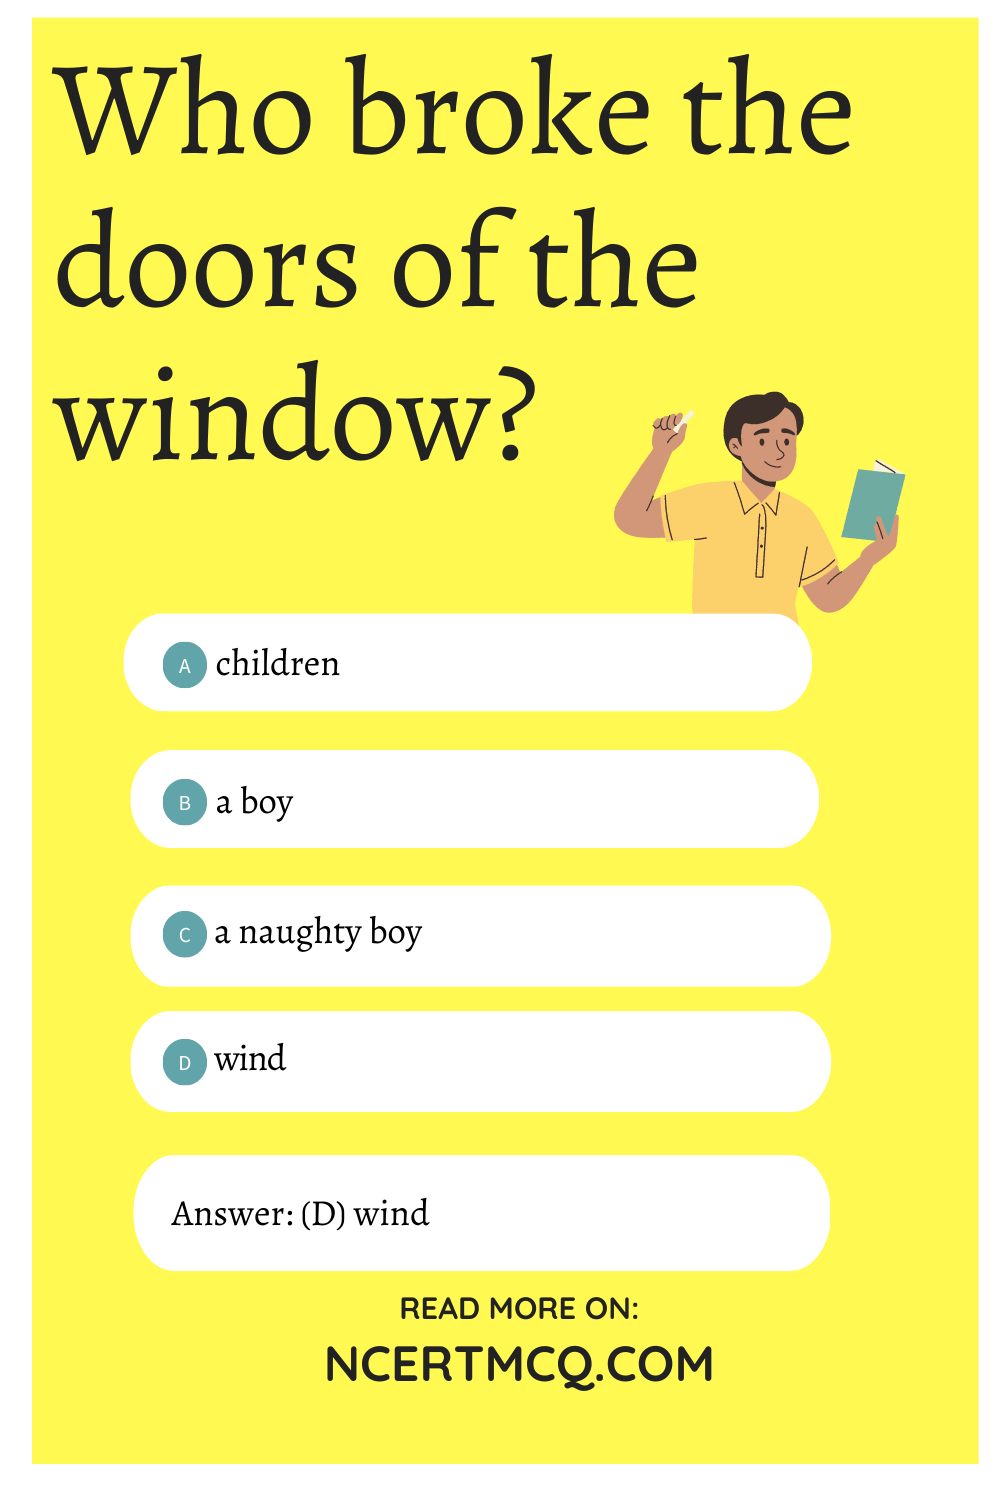 Who broke the doors of the window?